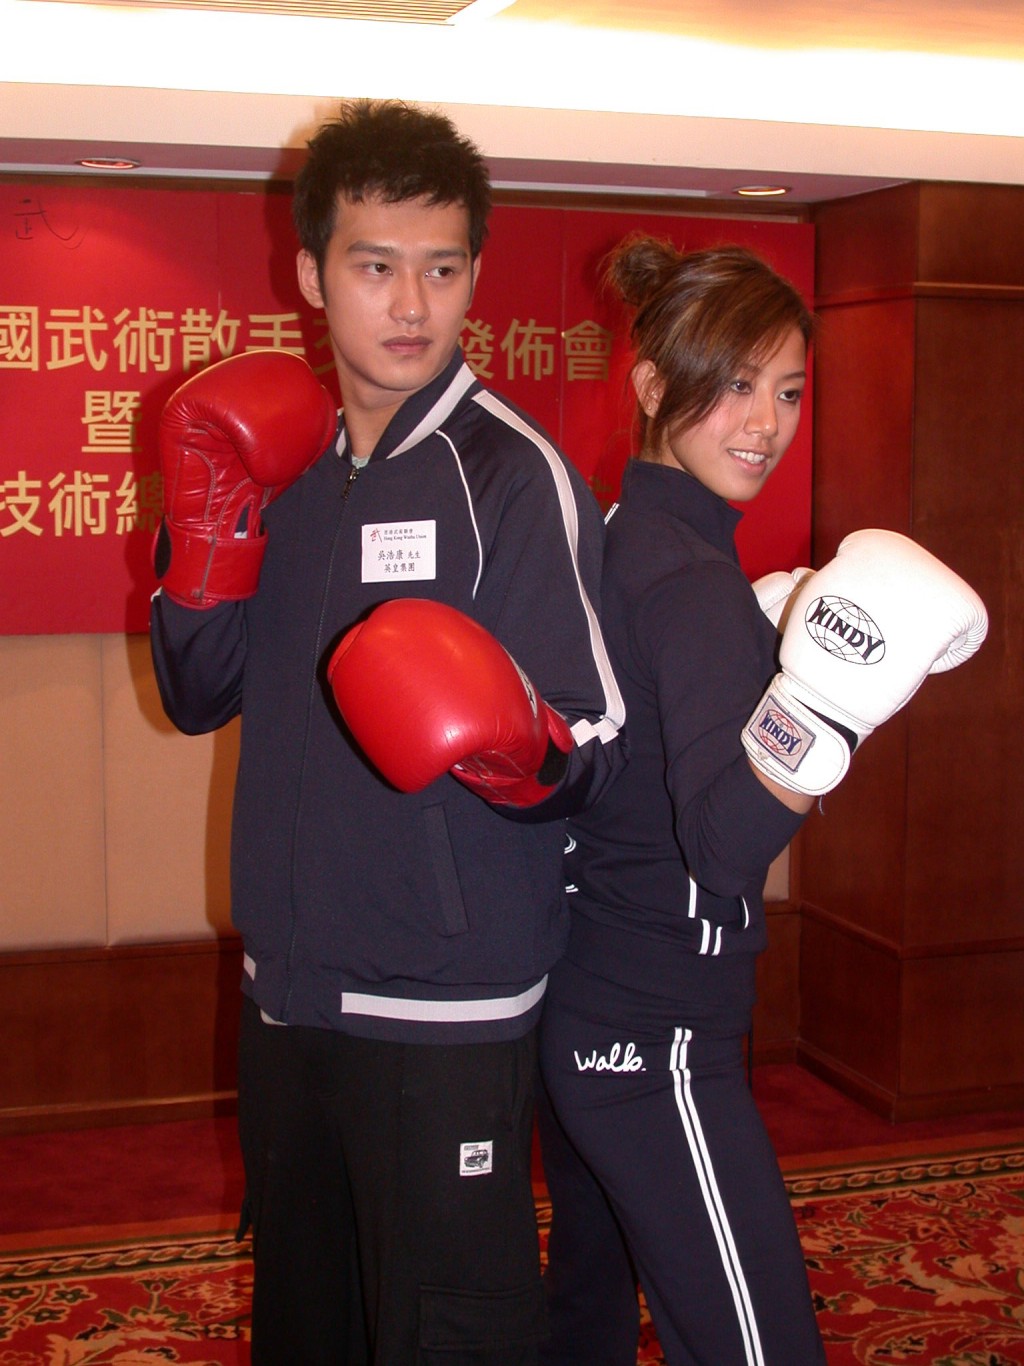 吳浩康曾經是打泰拳高手。